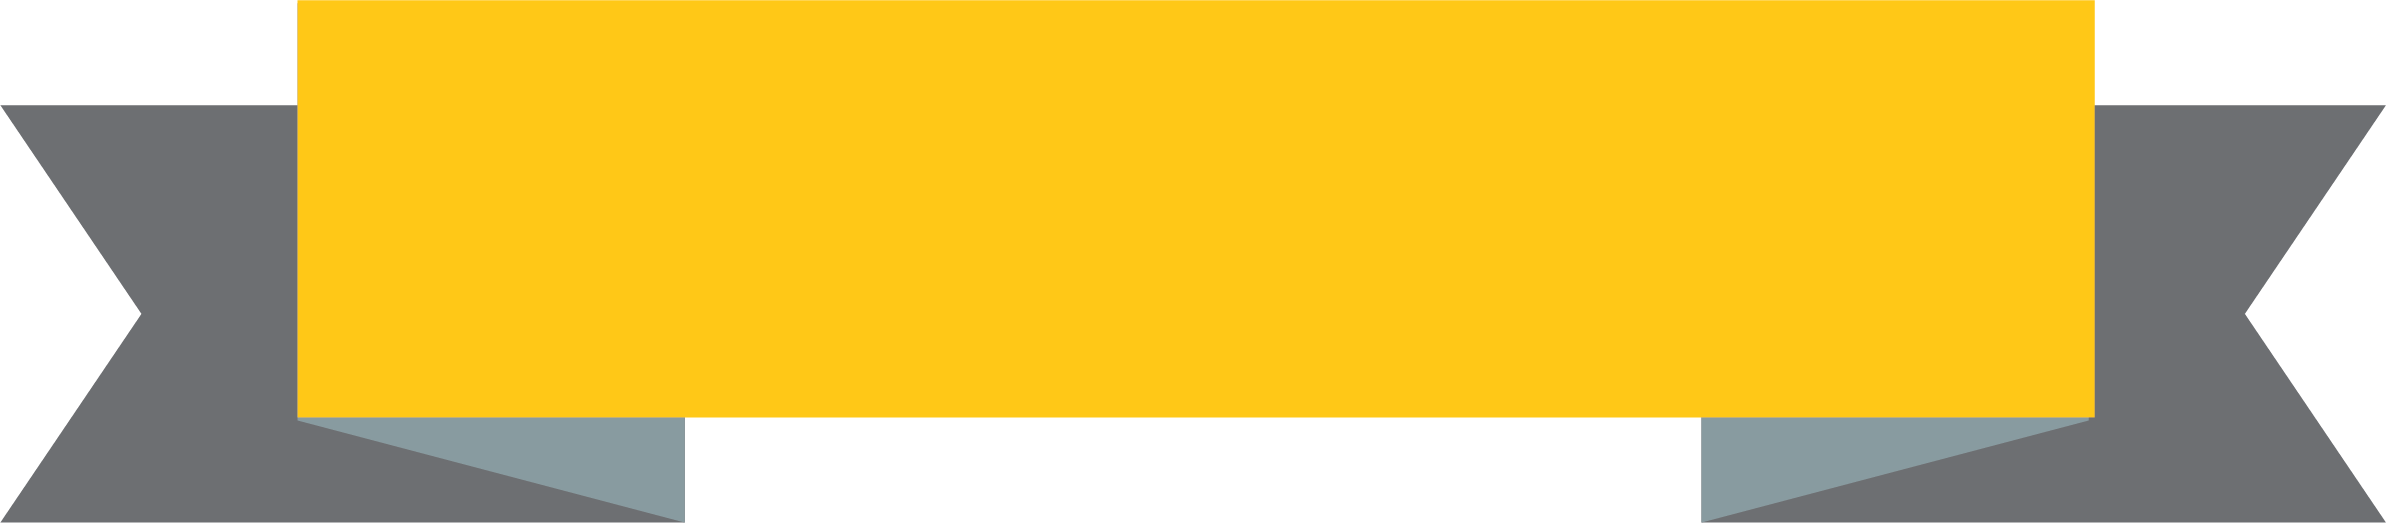 Imagen PNG de la cinta amarilla con fondo Transparente